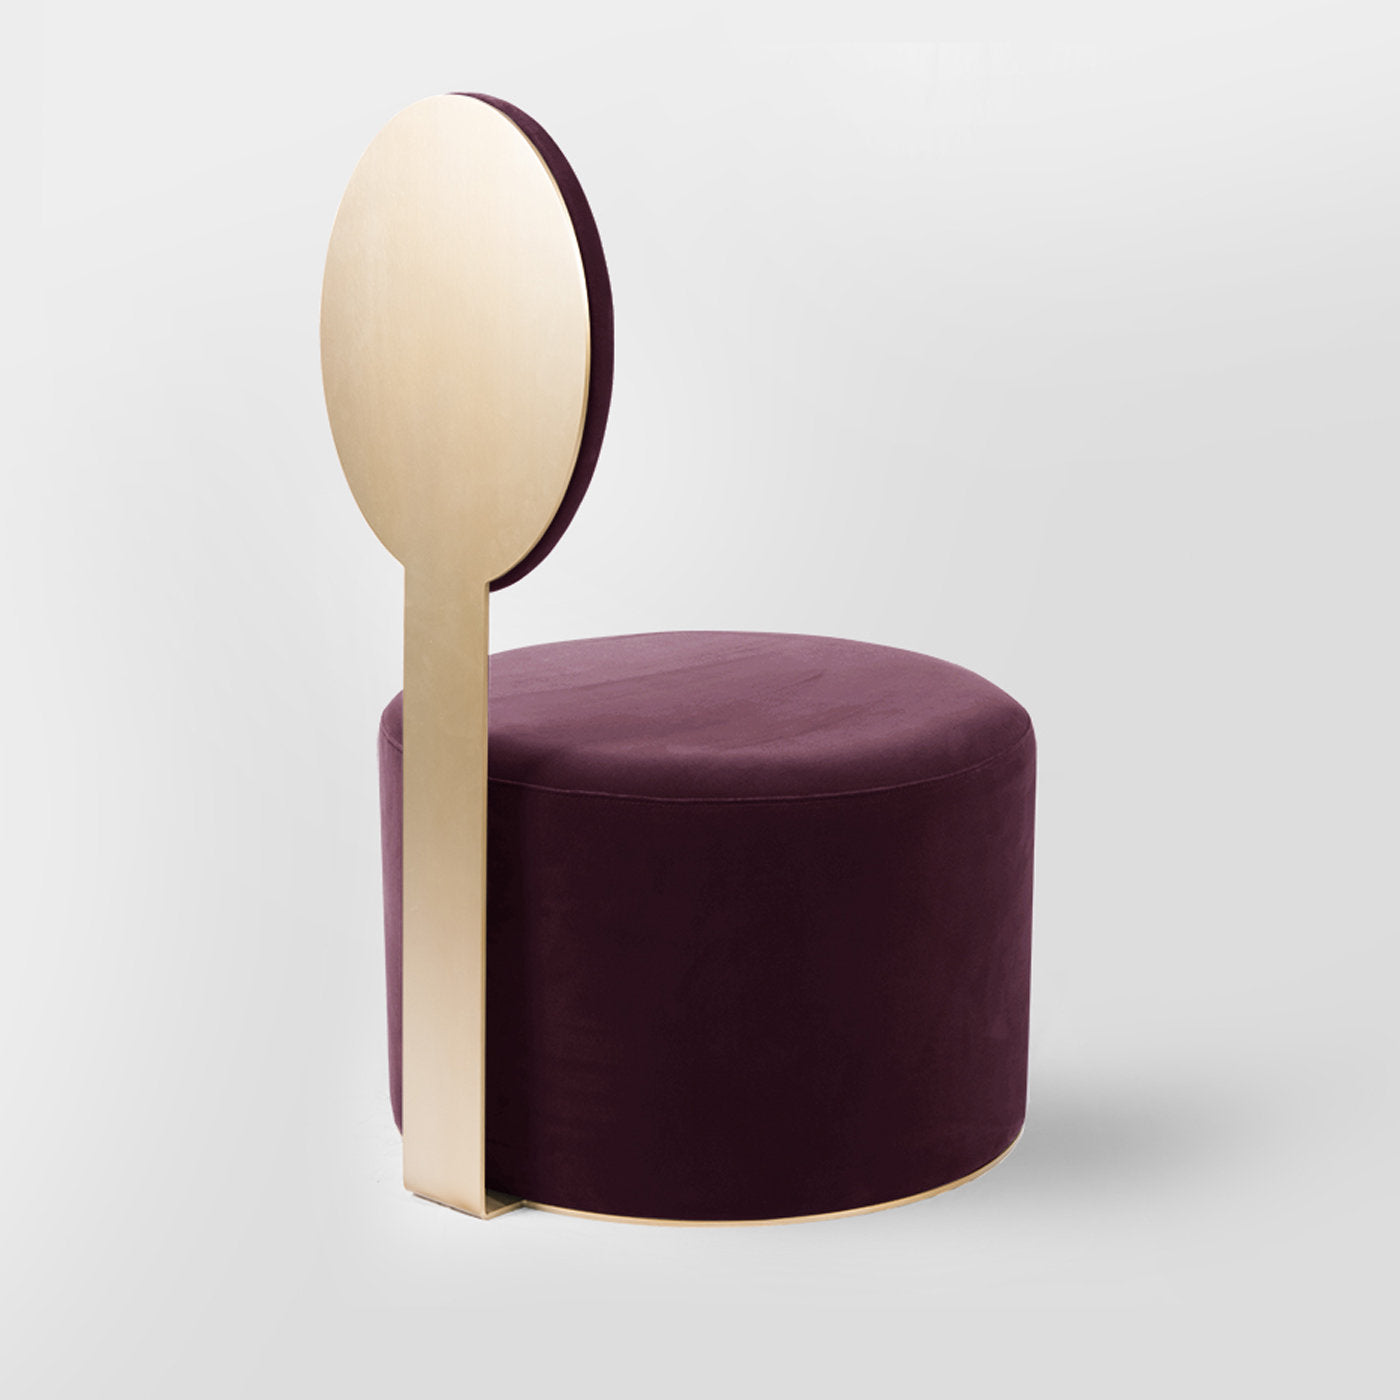 Pop Purple Chair by Artefatto Design Studio - Alternative view 2